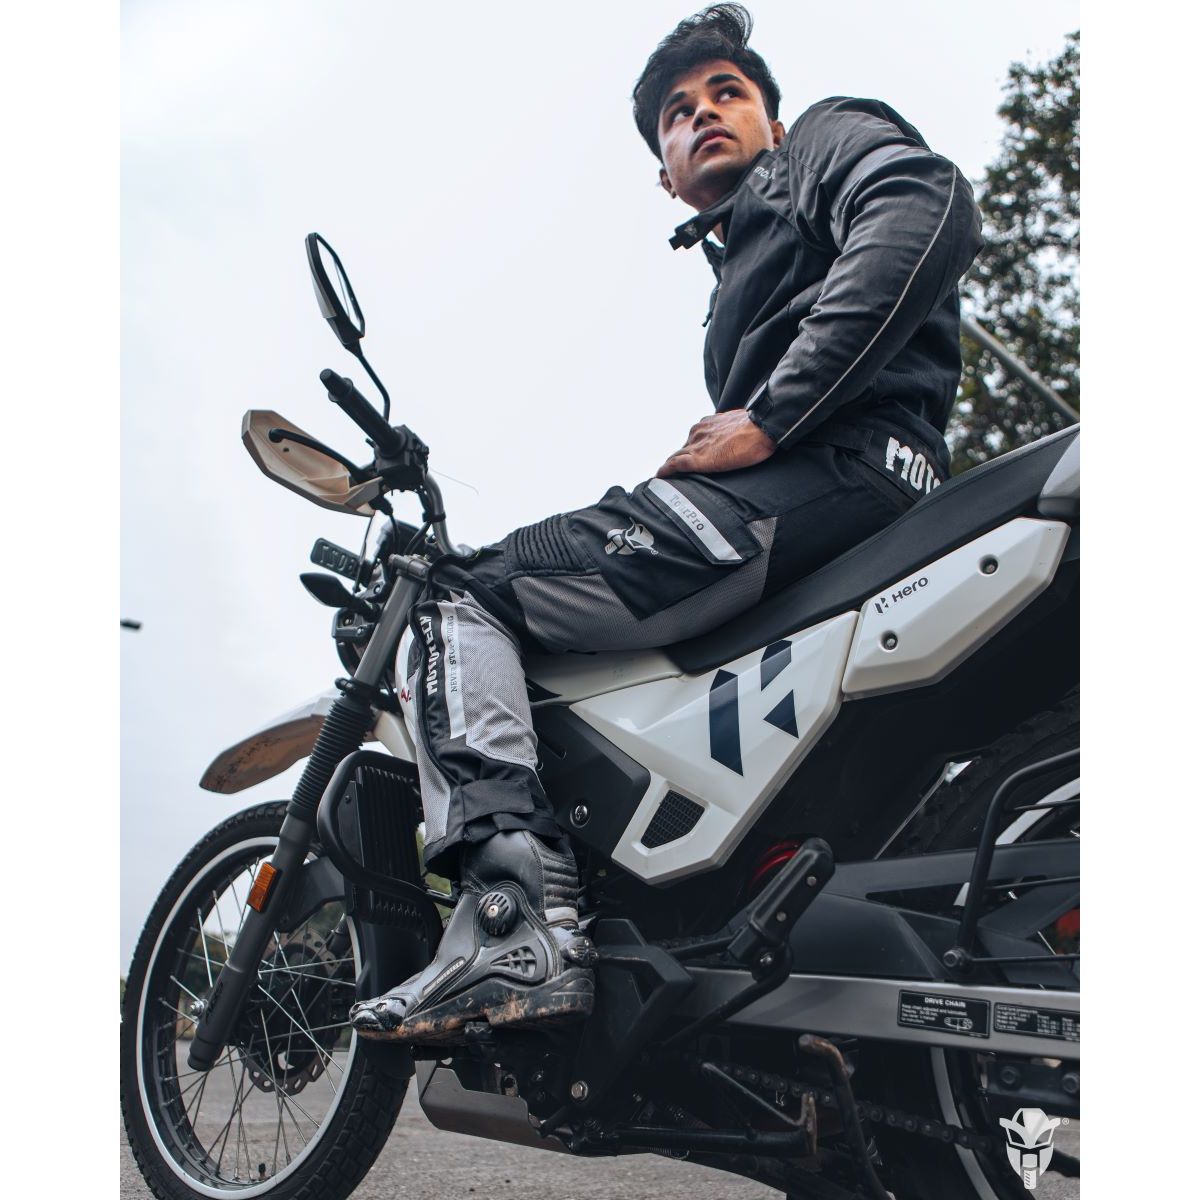 Best Sport Motorcycle Pants Guide (Updated Reviews!) - Motorcycle Gear Hub